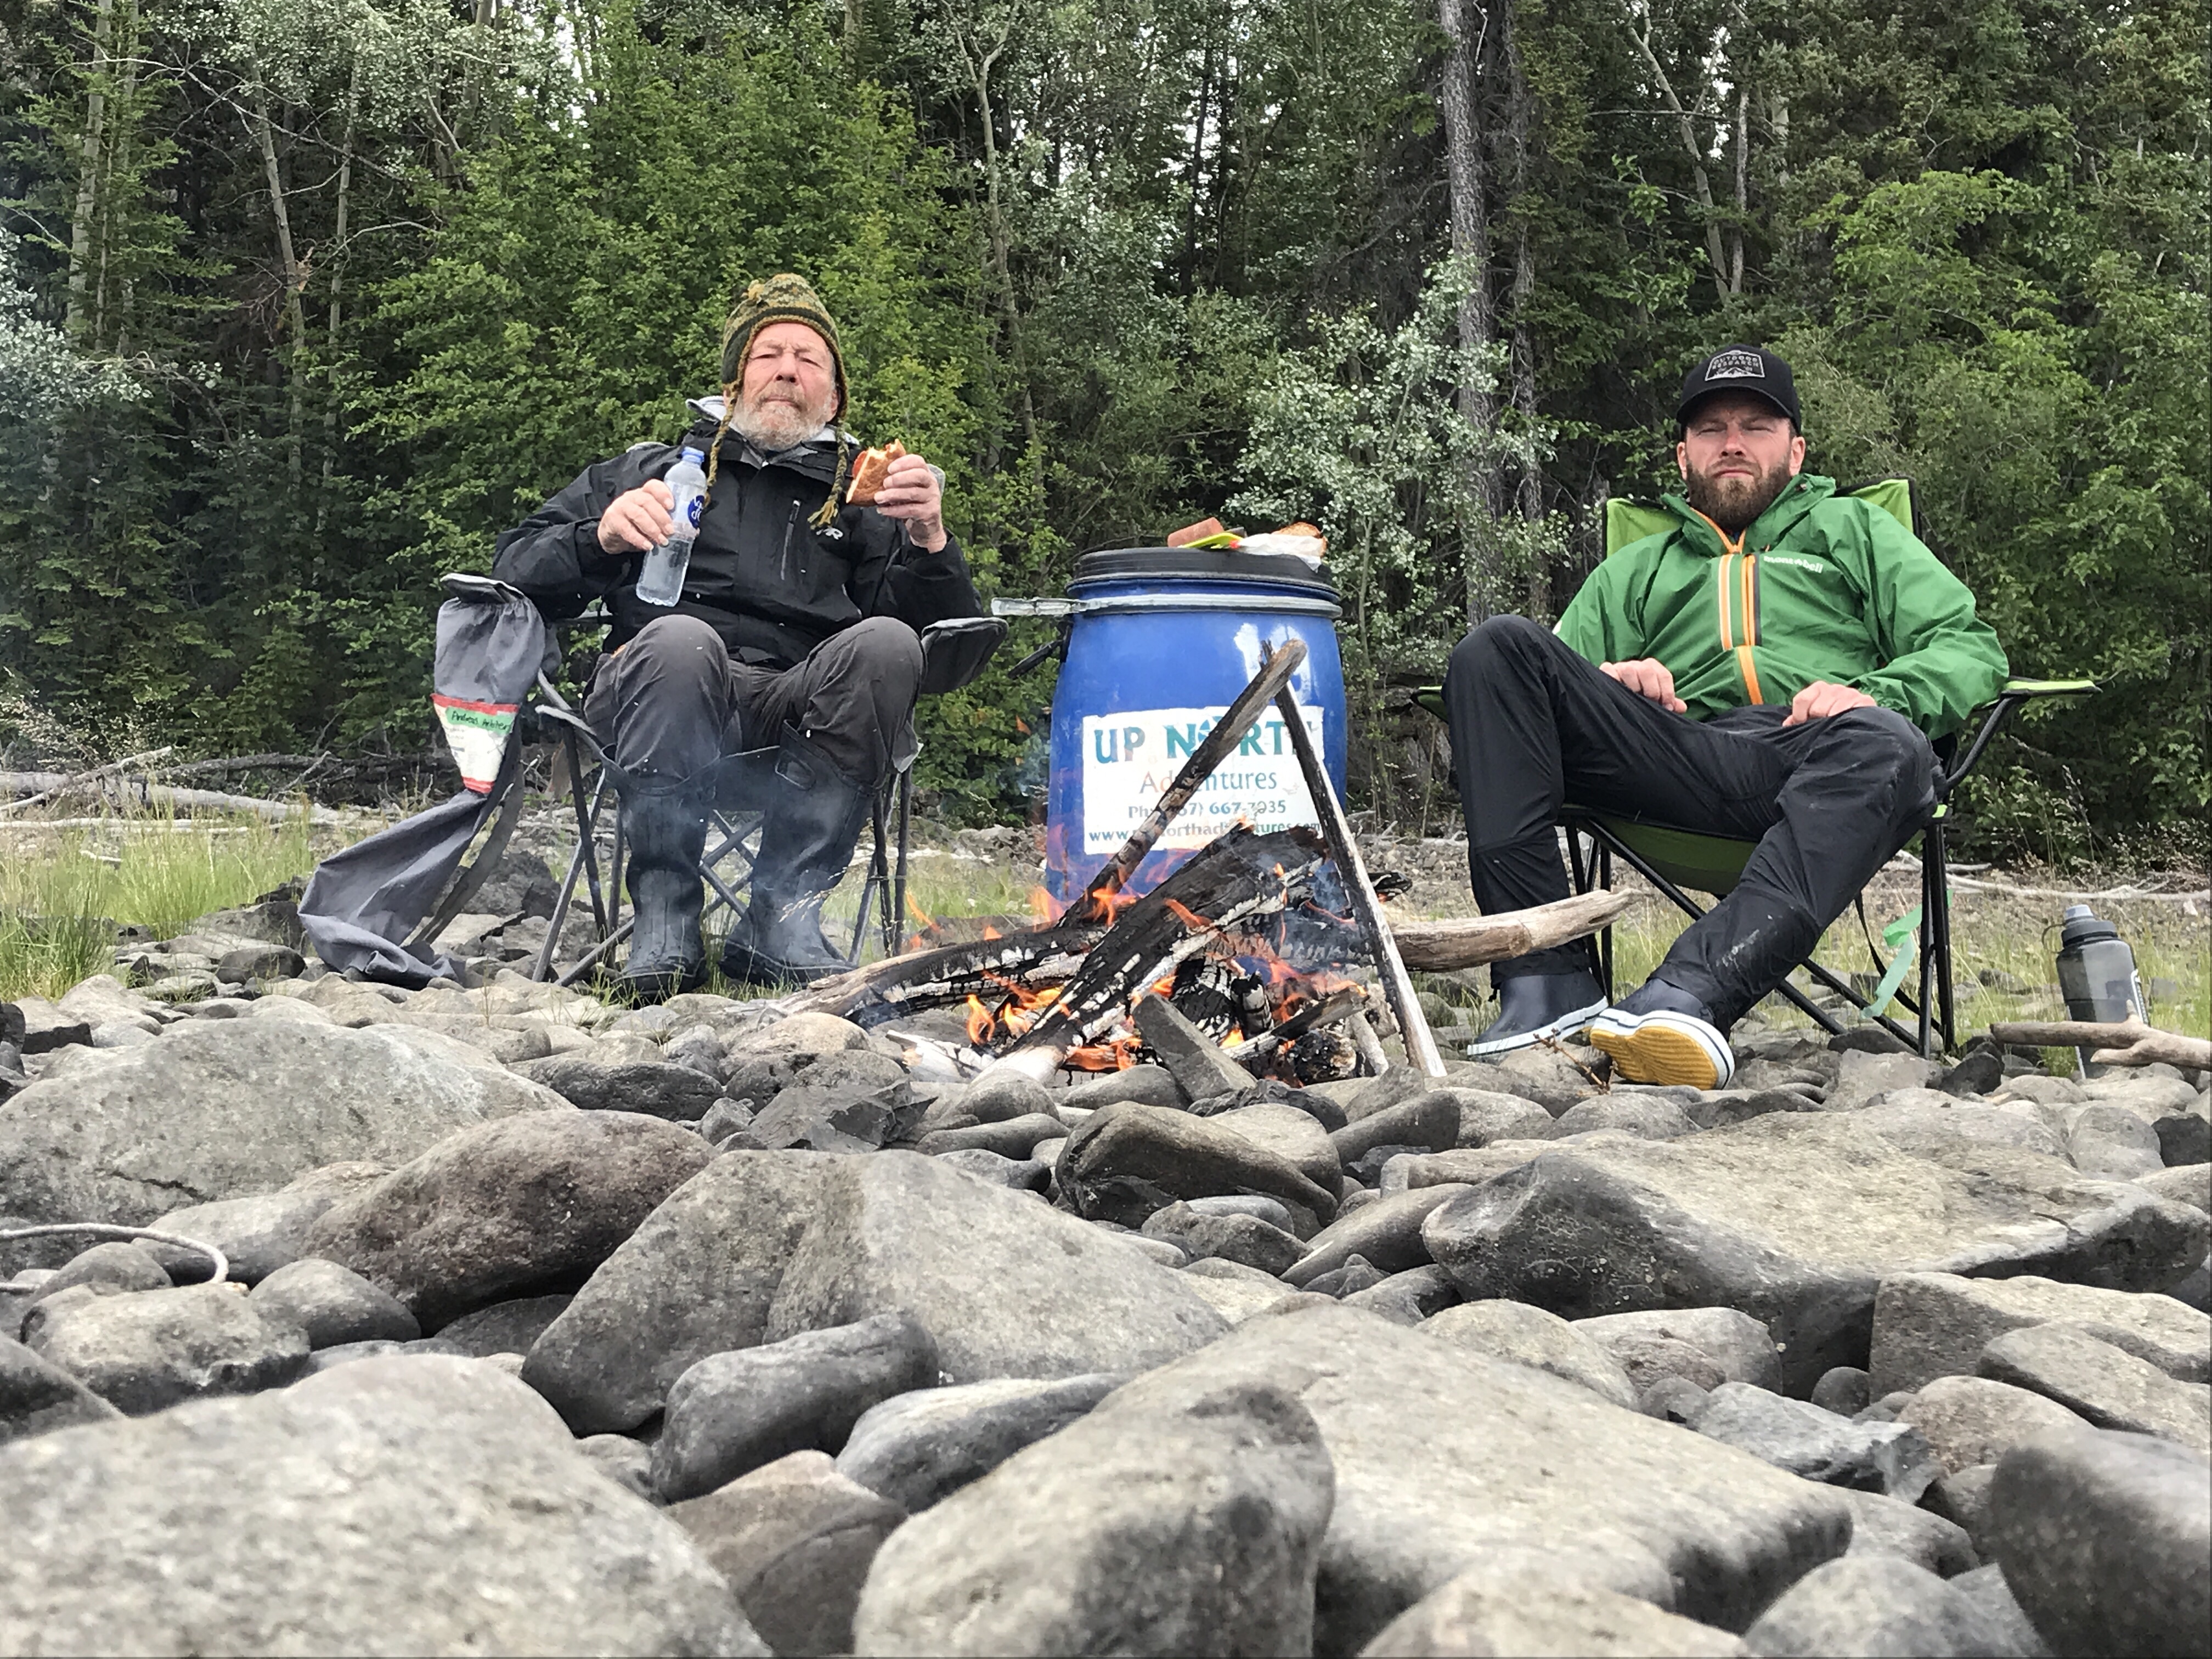 Frokost på bredden af Yukon River, praktiske gummistøvler når vejret er ustadigt.